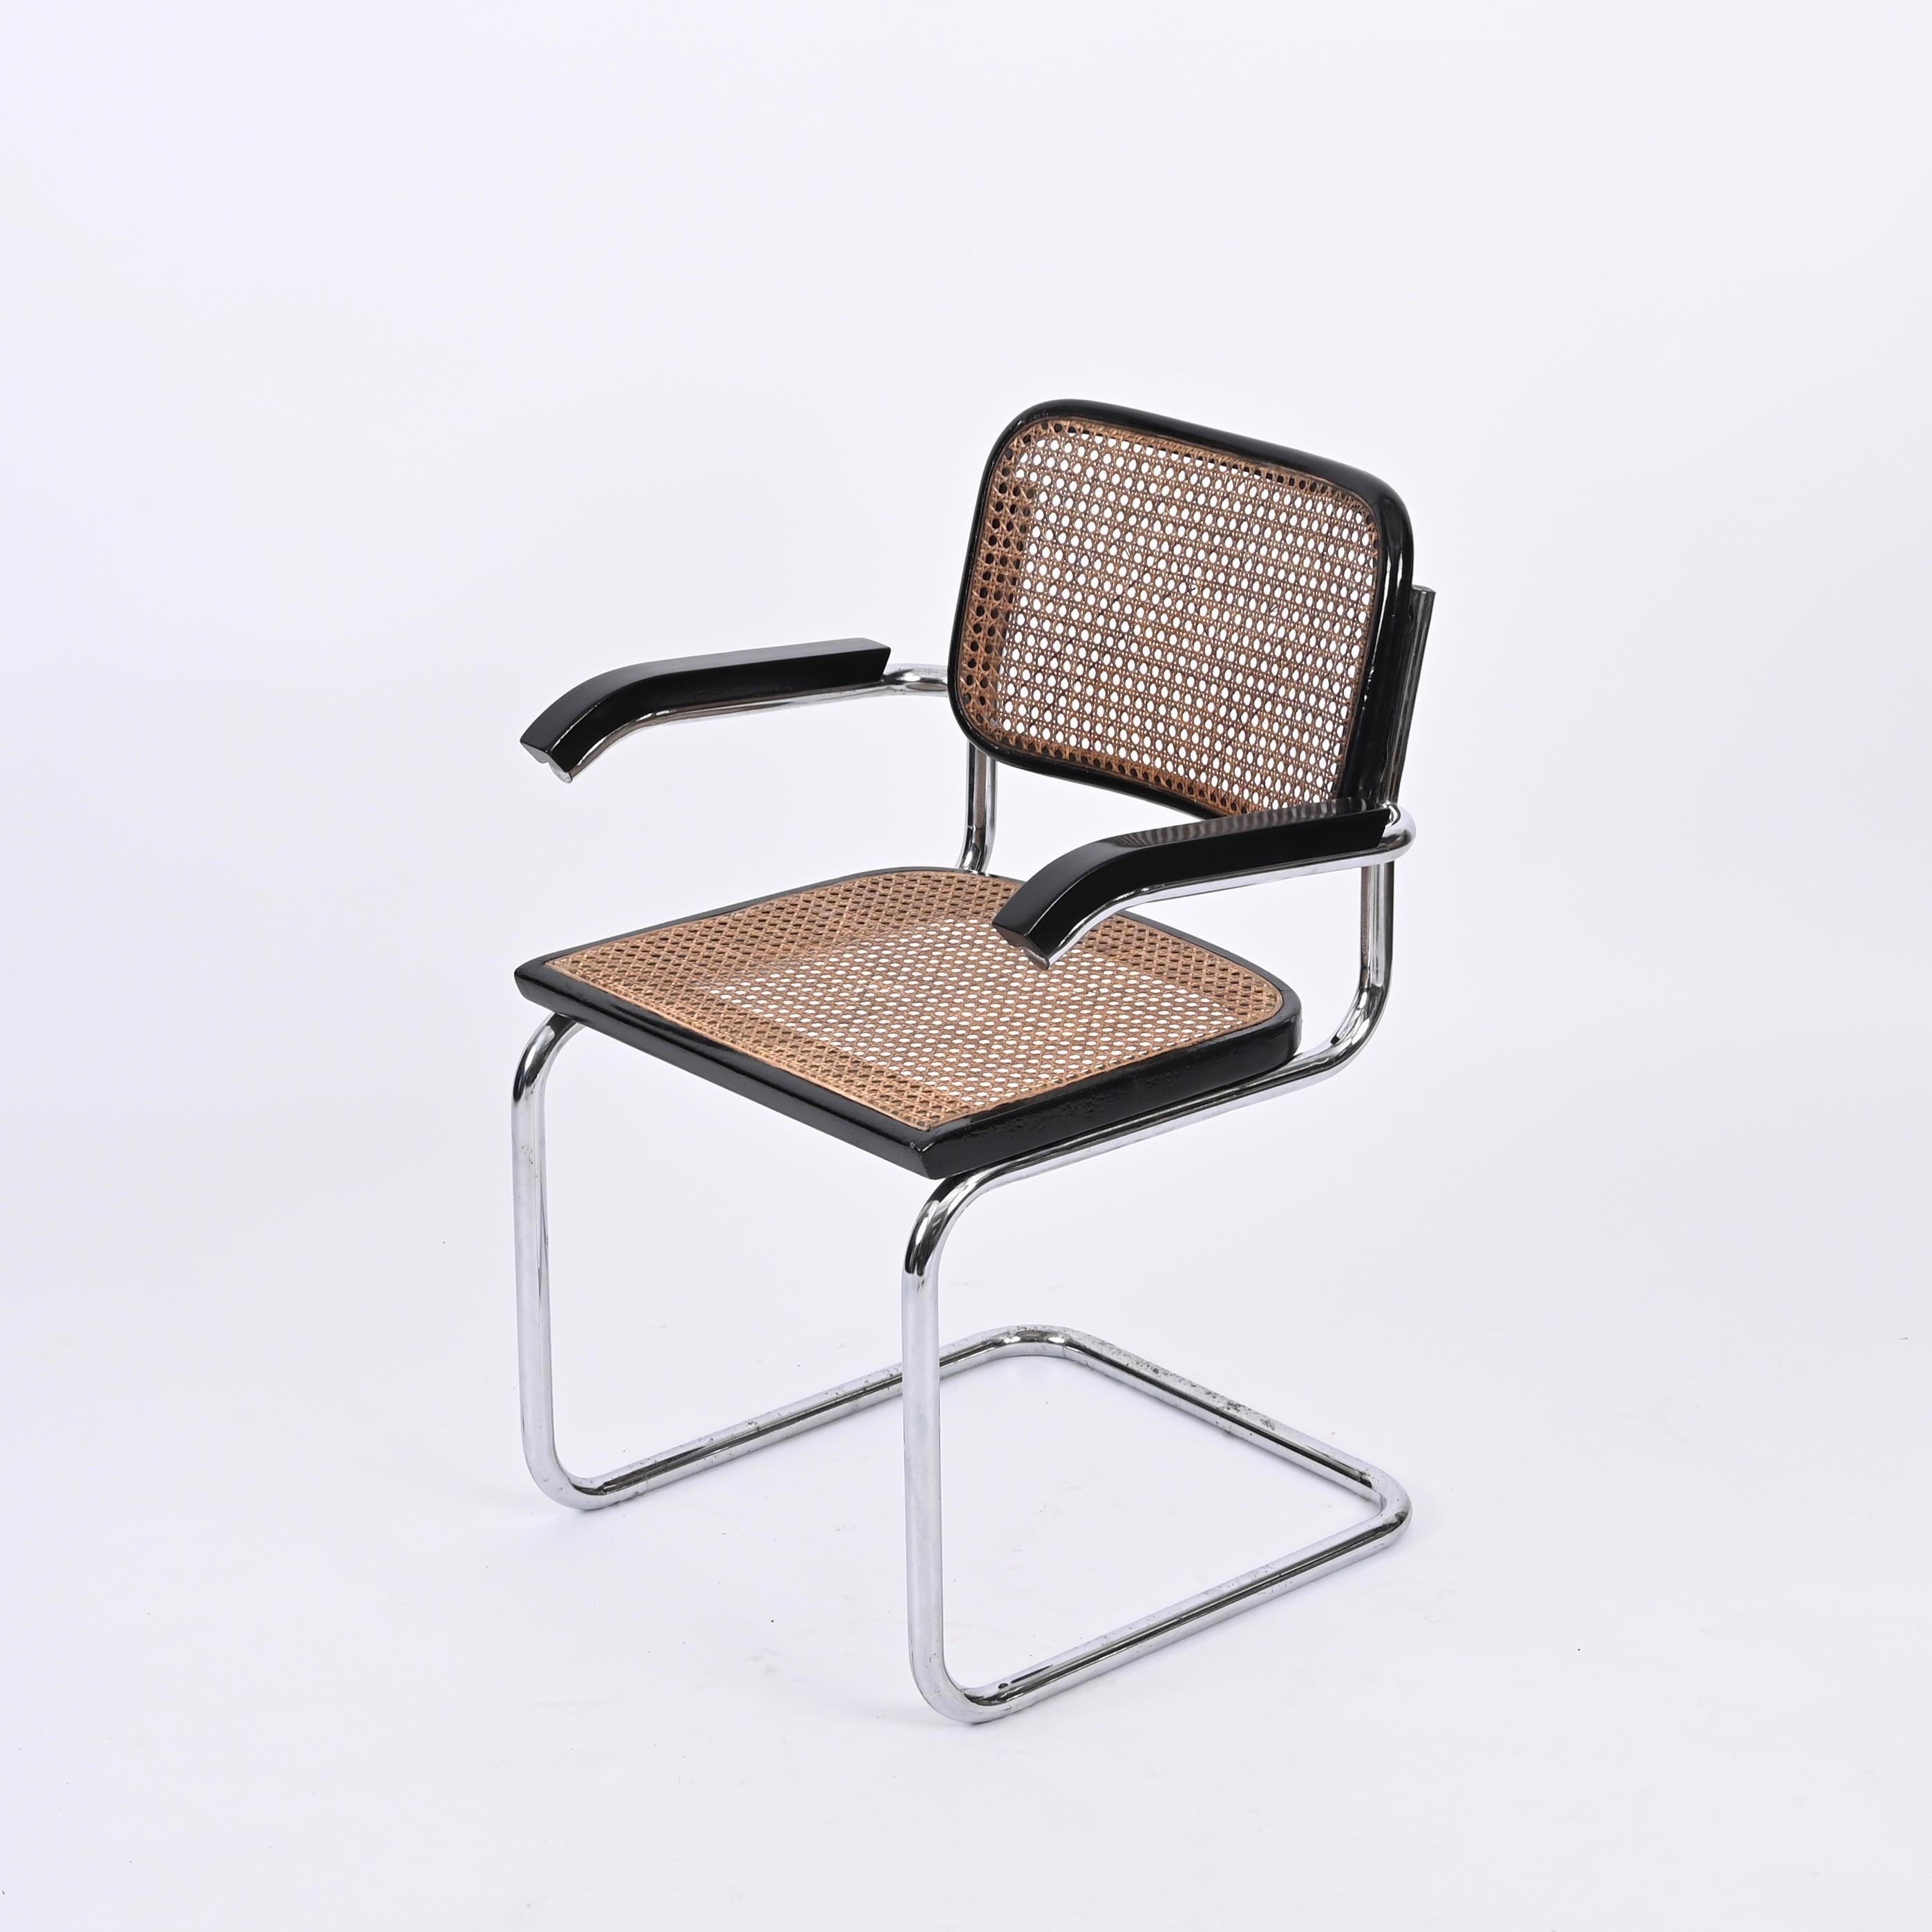 Magnifique fauteuil Cesca du milieu du siècle en métal chromé et chaises en osier tressé. Cette magnifique chaise a été conçue par Marcel Breuer et produite par Gavina en Italie dans les années 1960.

Cette chaise emblématique est dotée d'une